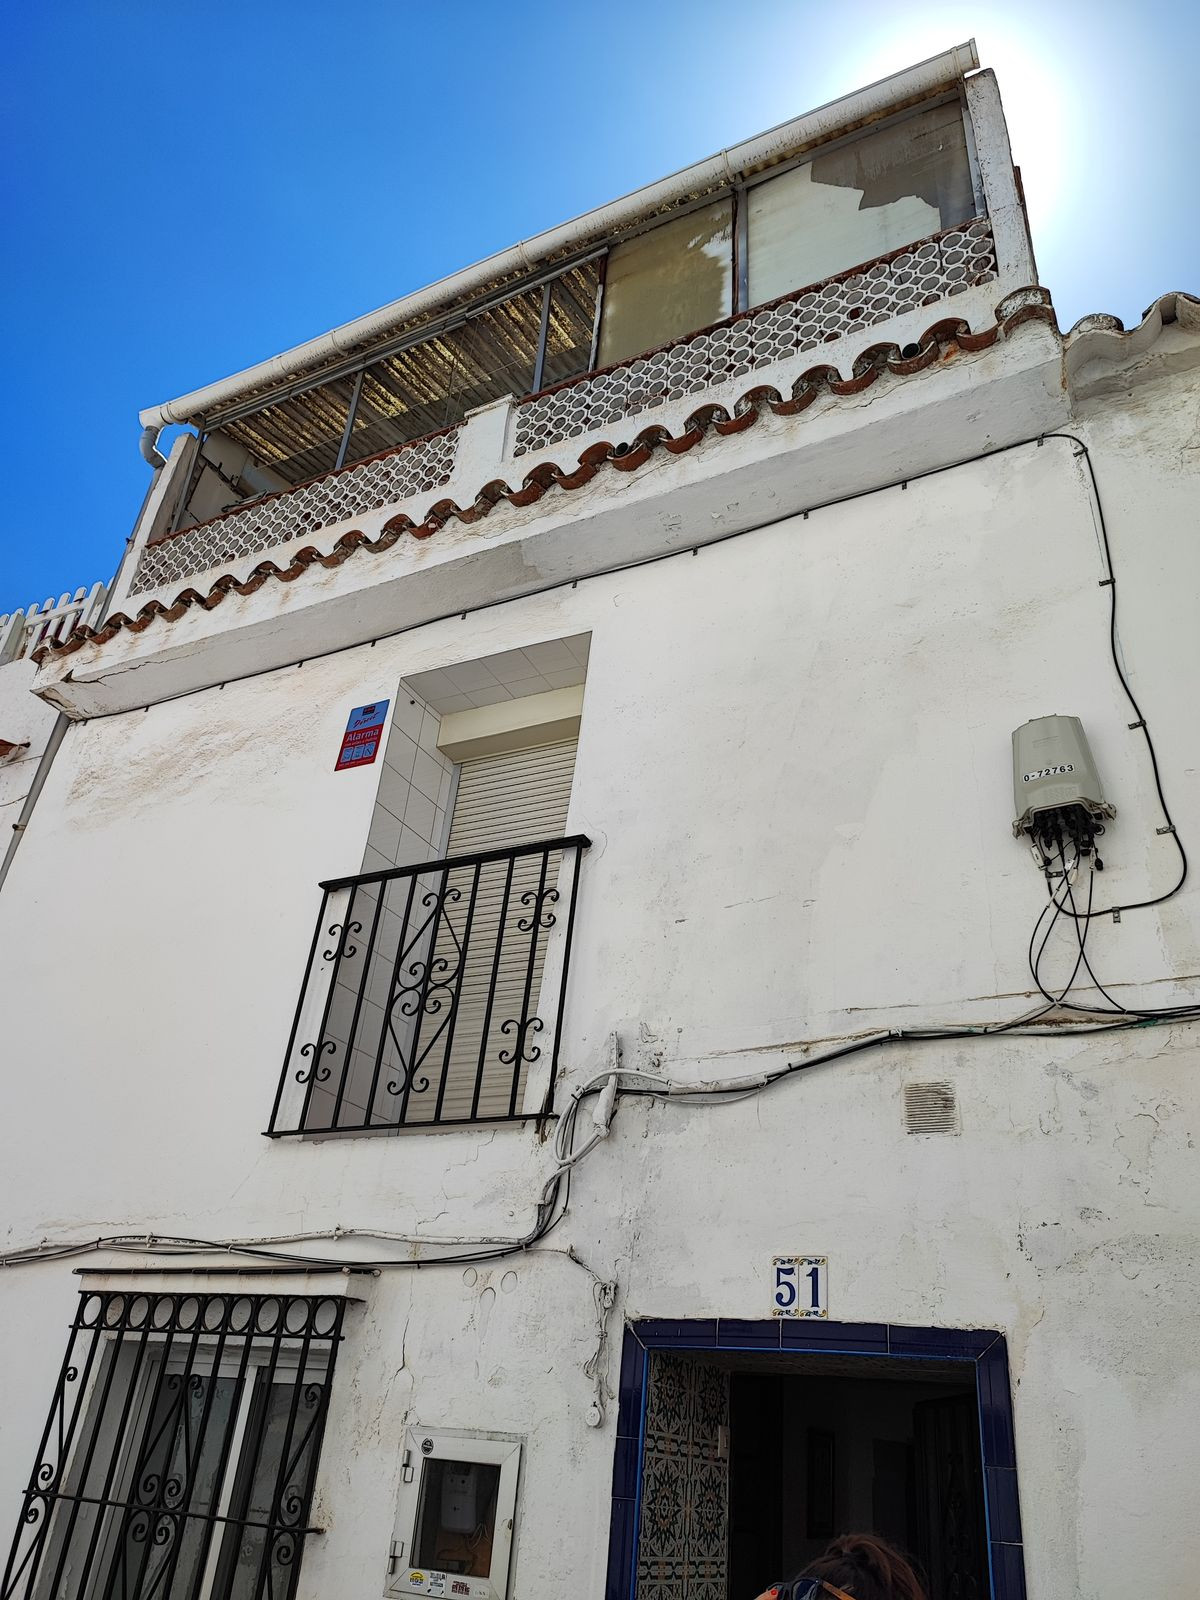 						Terreno  Residencial
													en venta 
																			 en Marbella
					